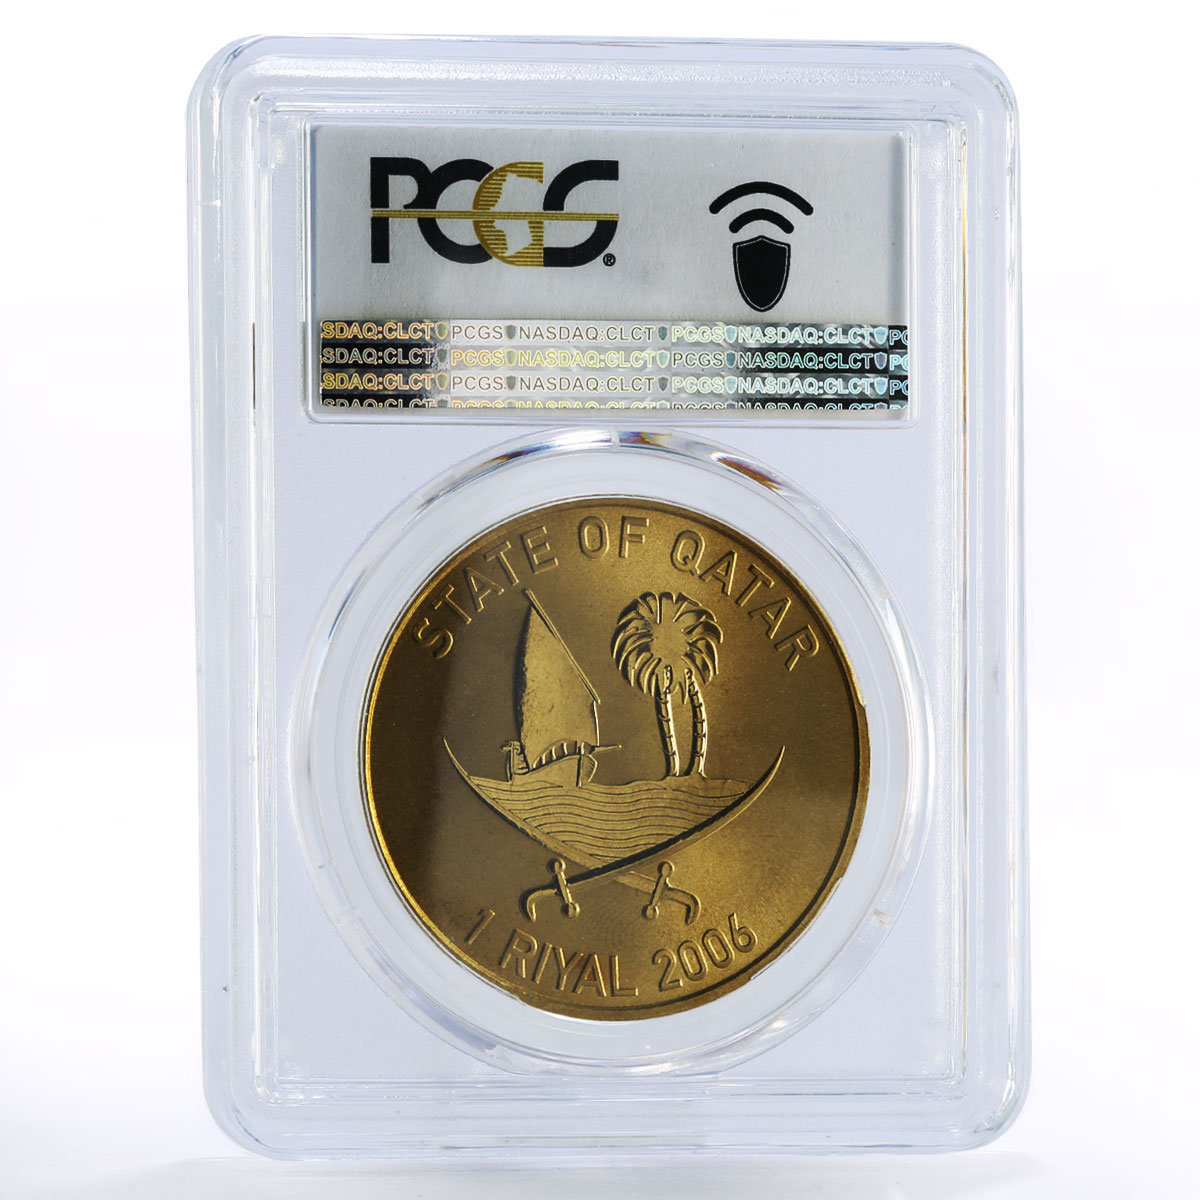 Qatar 1 riyal Asian Games Orry with Flag MS68 PCGS aluminium-bronze coin 2006